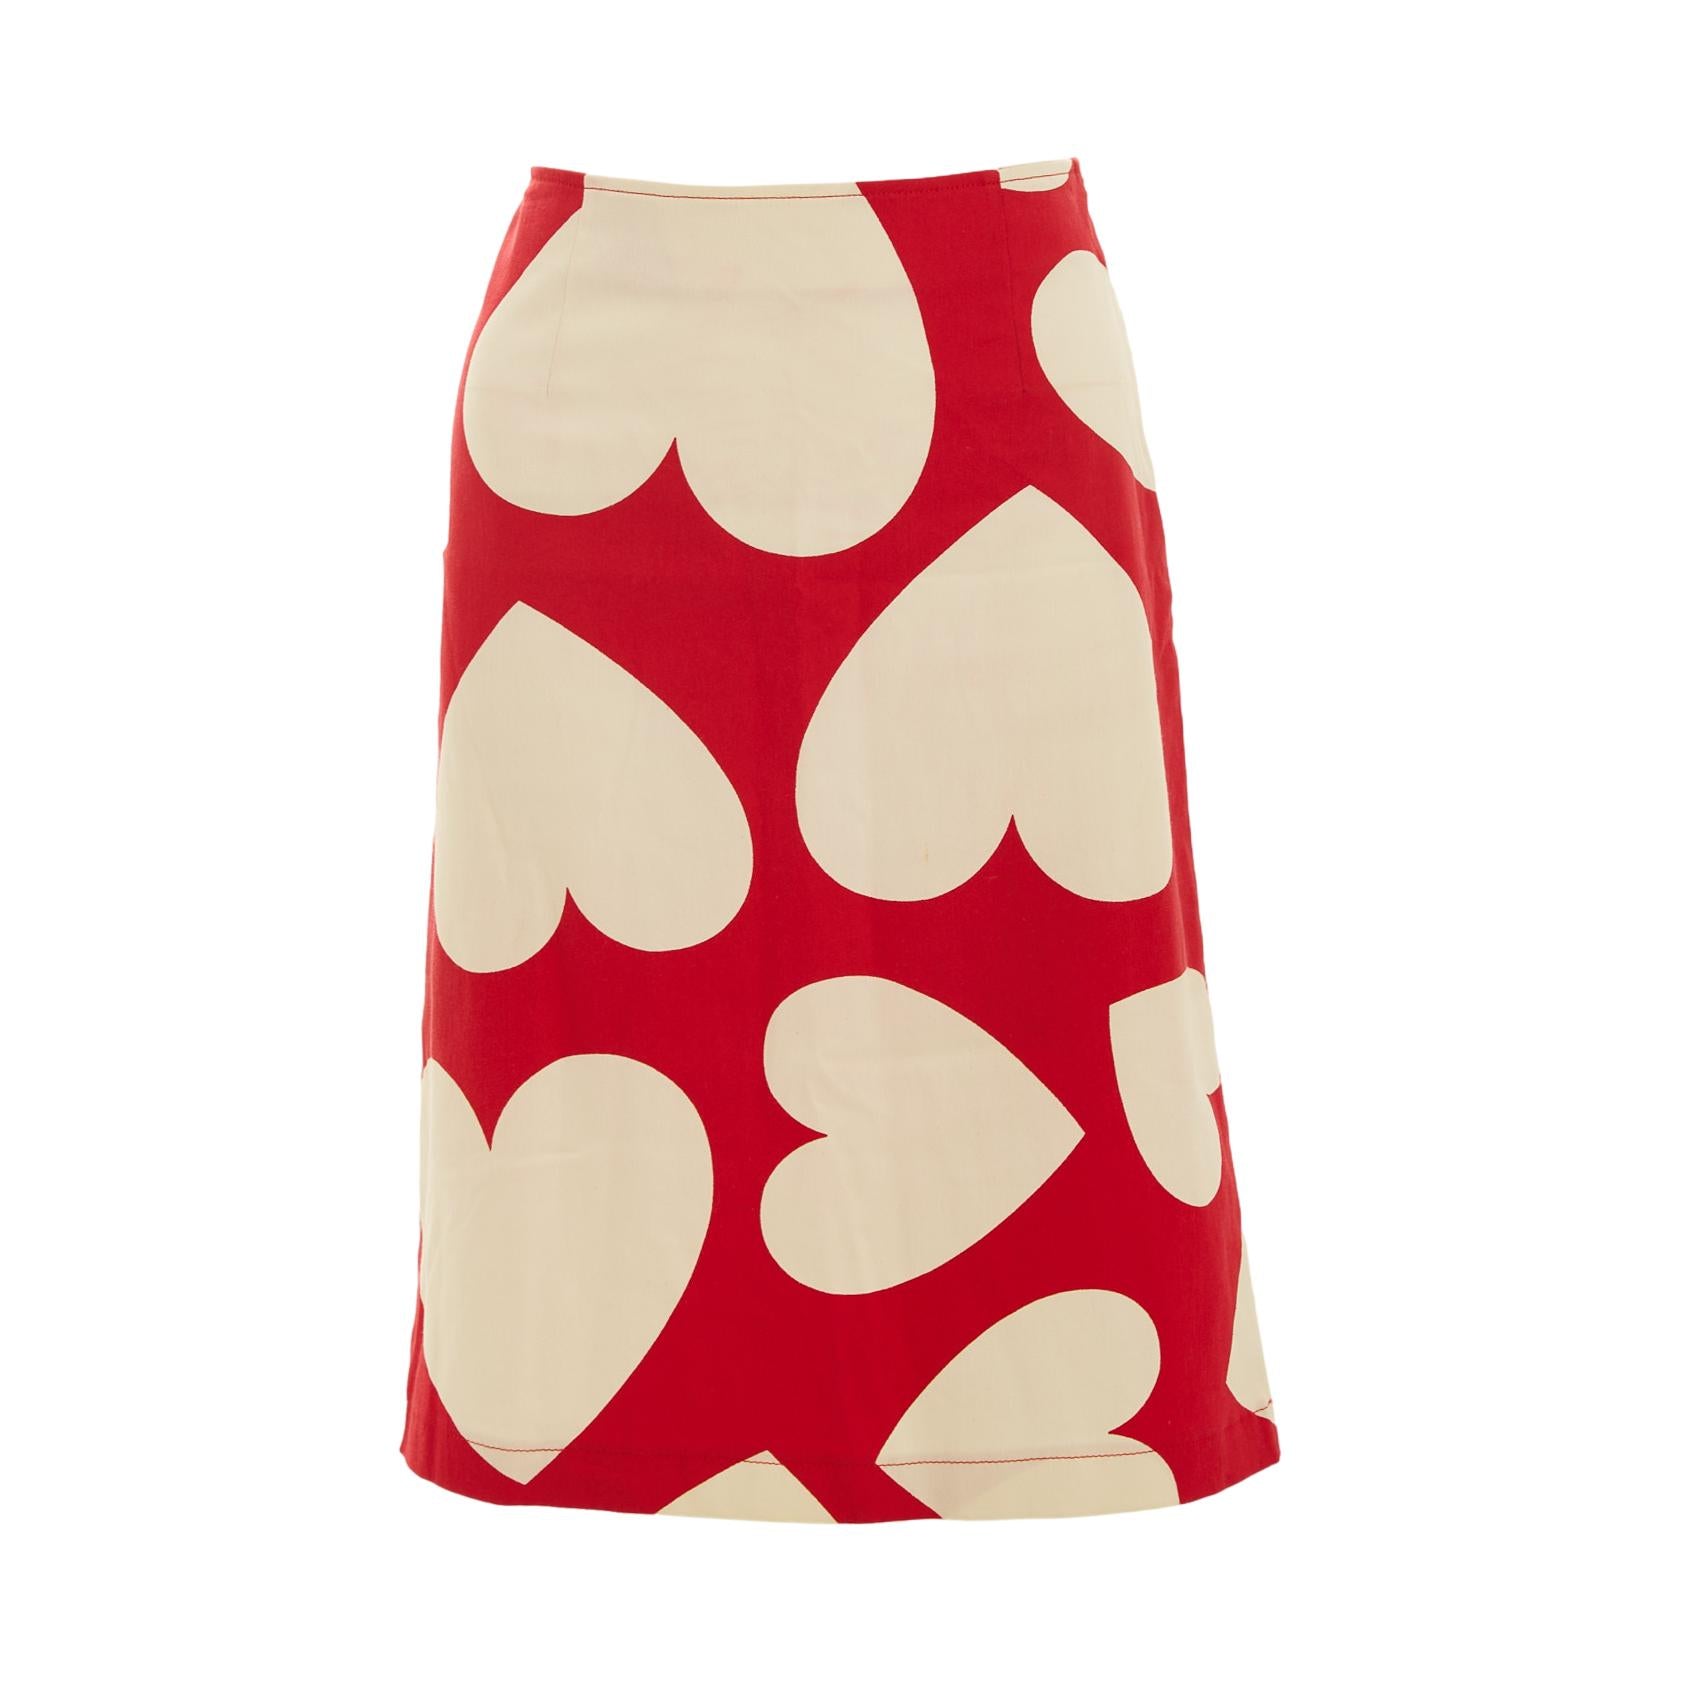 Moschino Red Heart Skirt